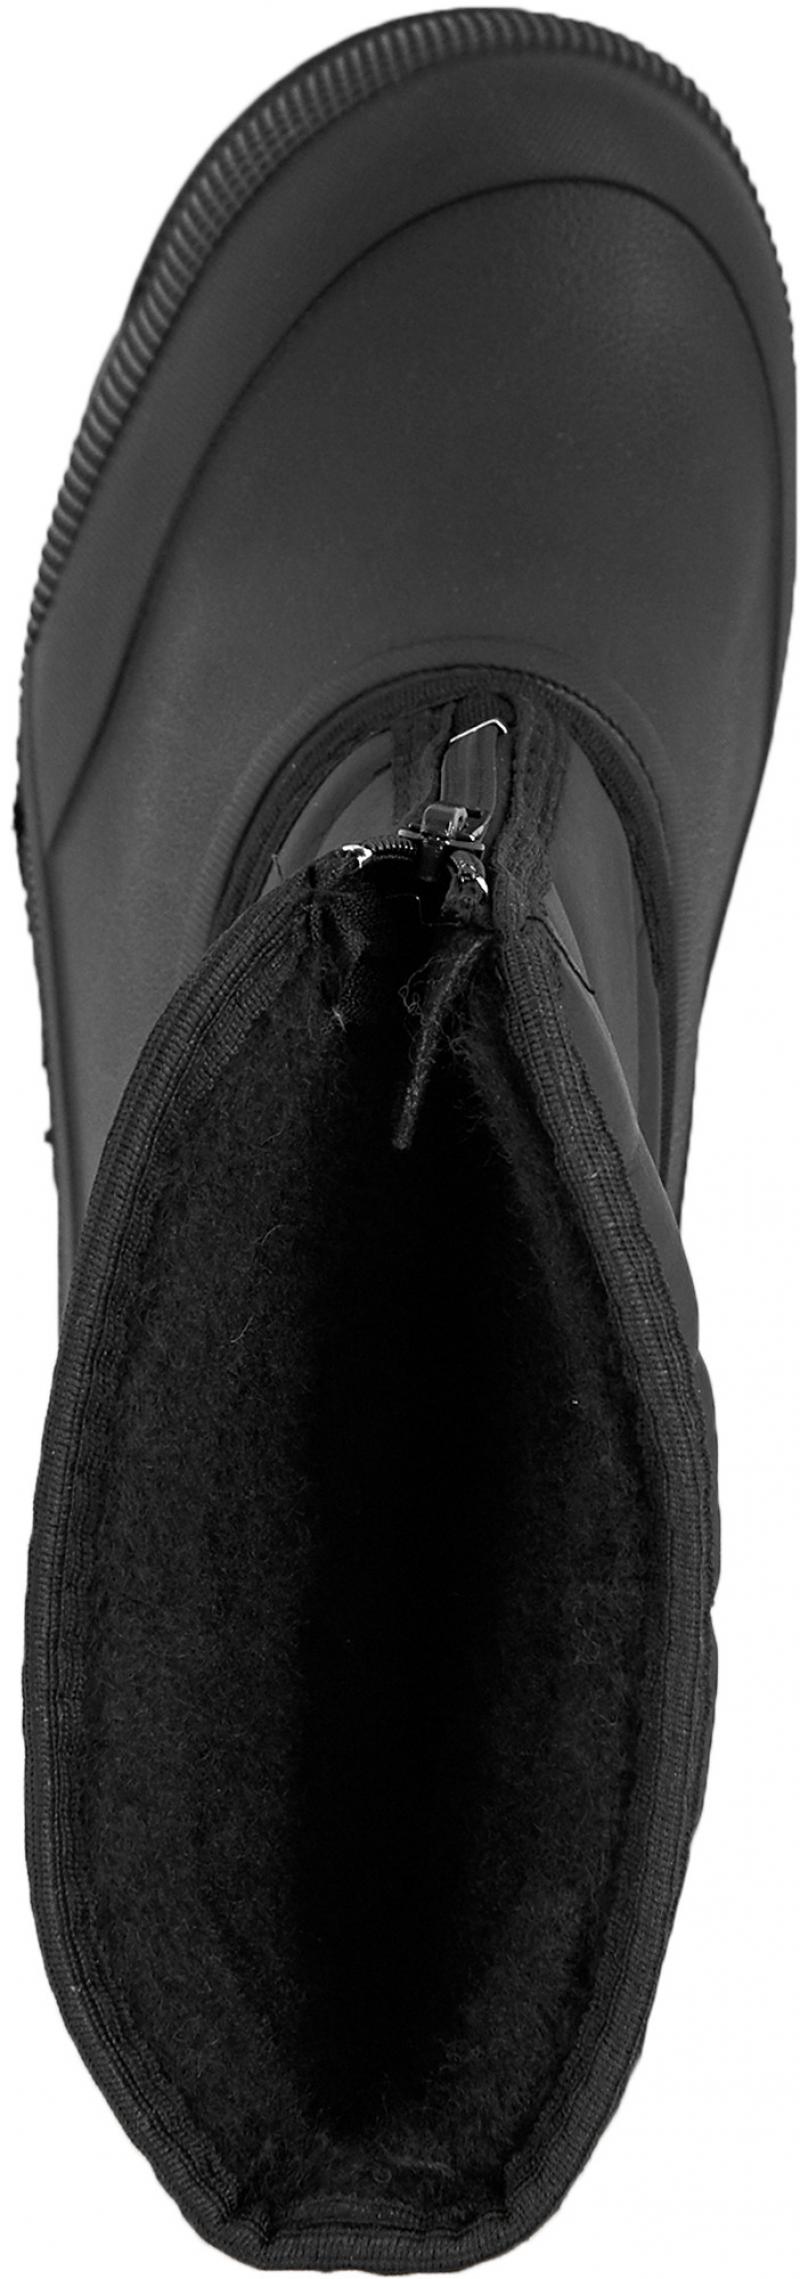 Сапоги мужские М-018 размер 44 цвет чёрный